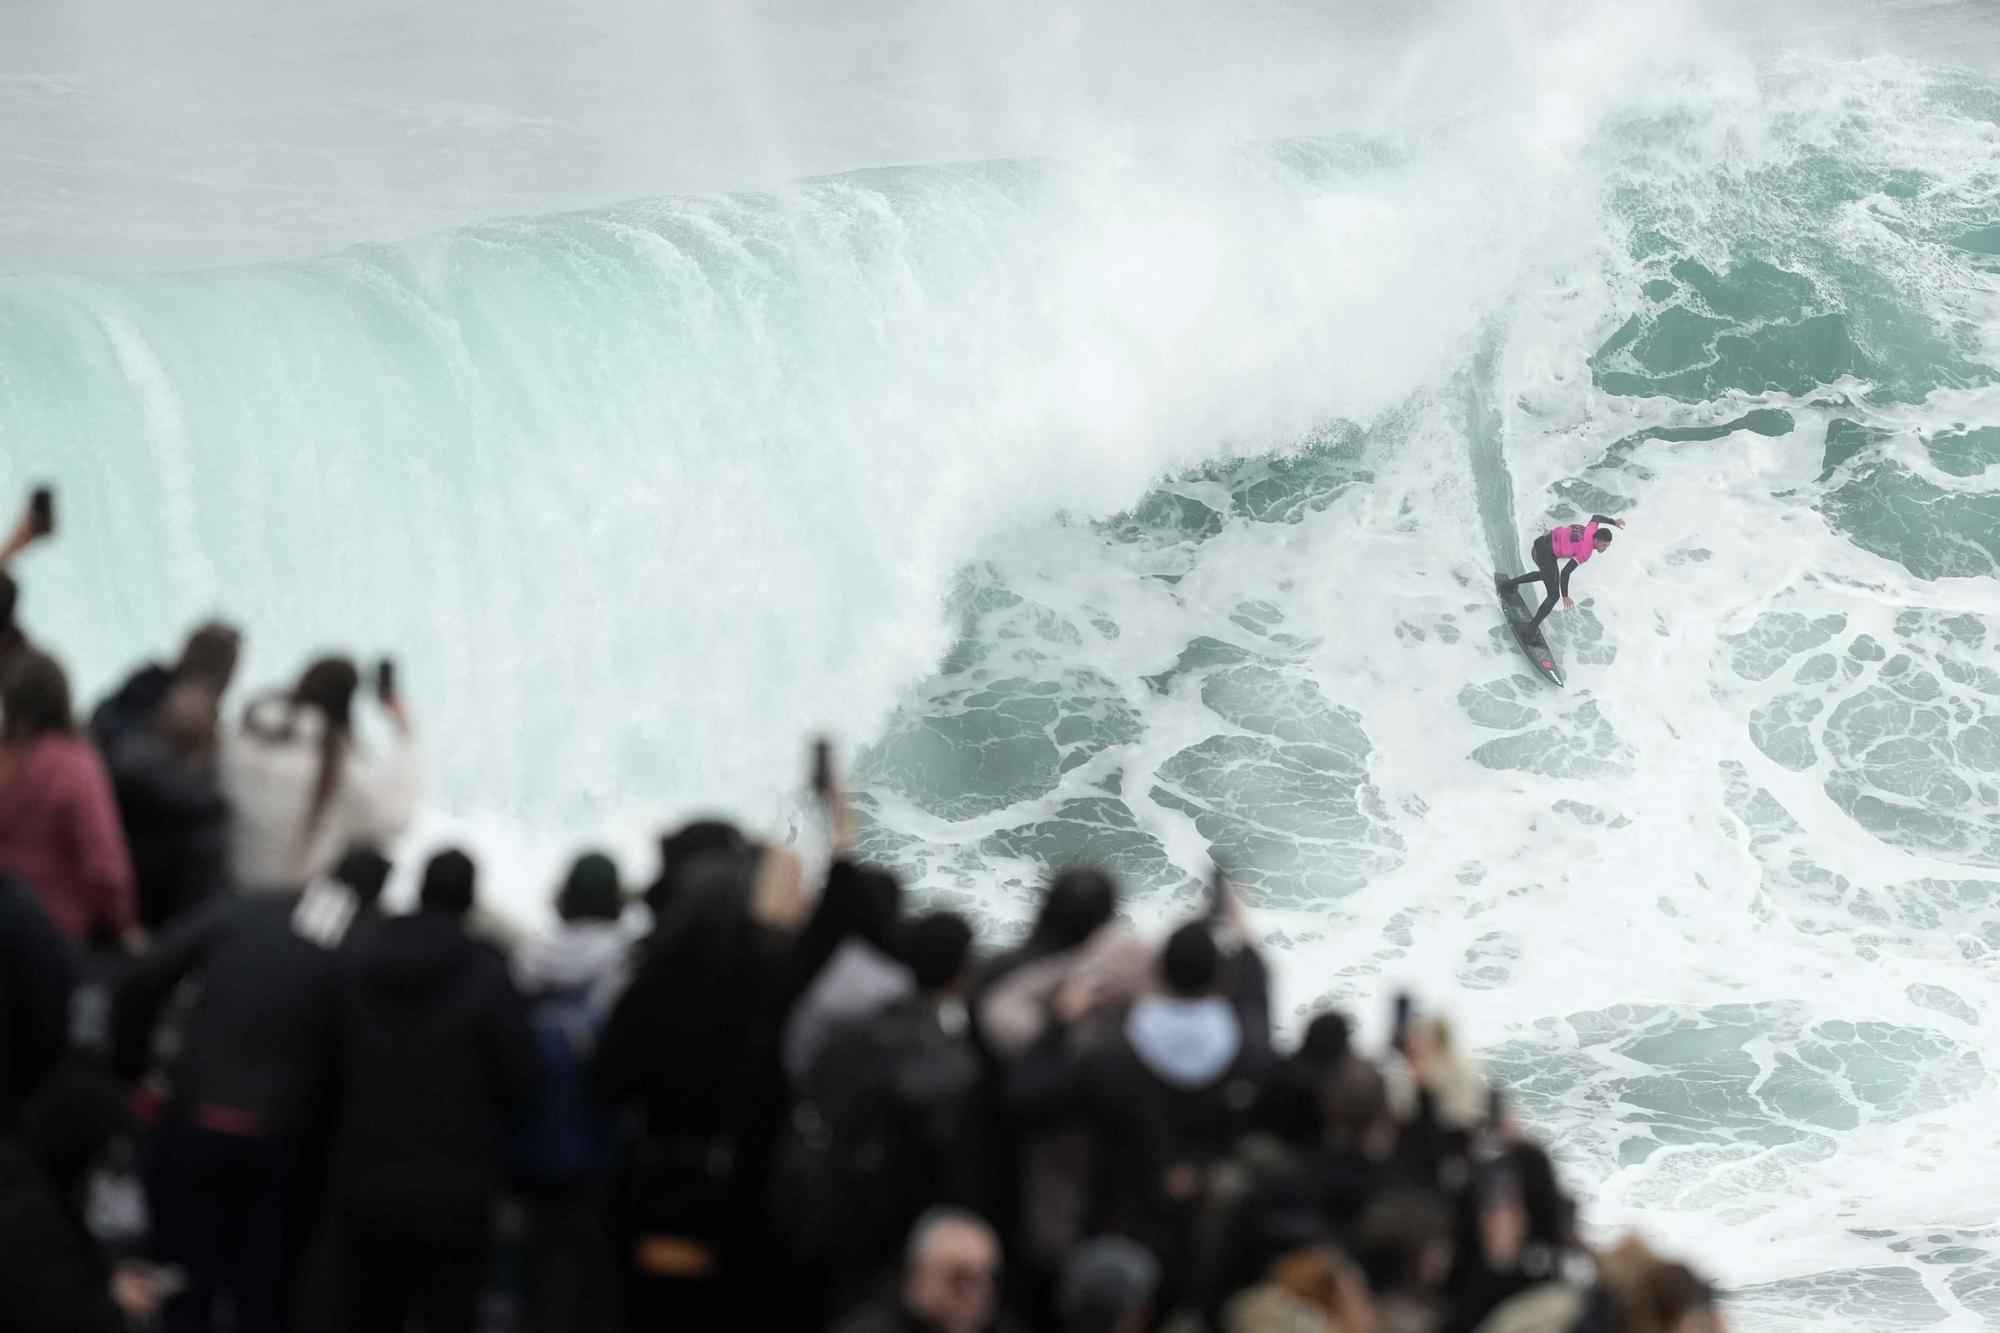 Campionat de surf d'onades gegants a Nazaré